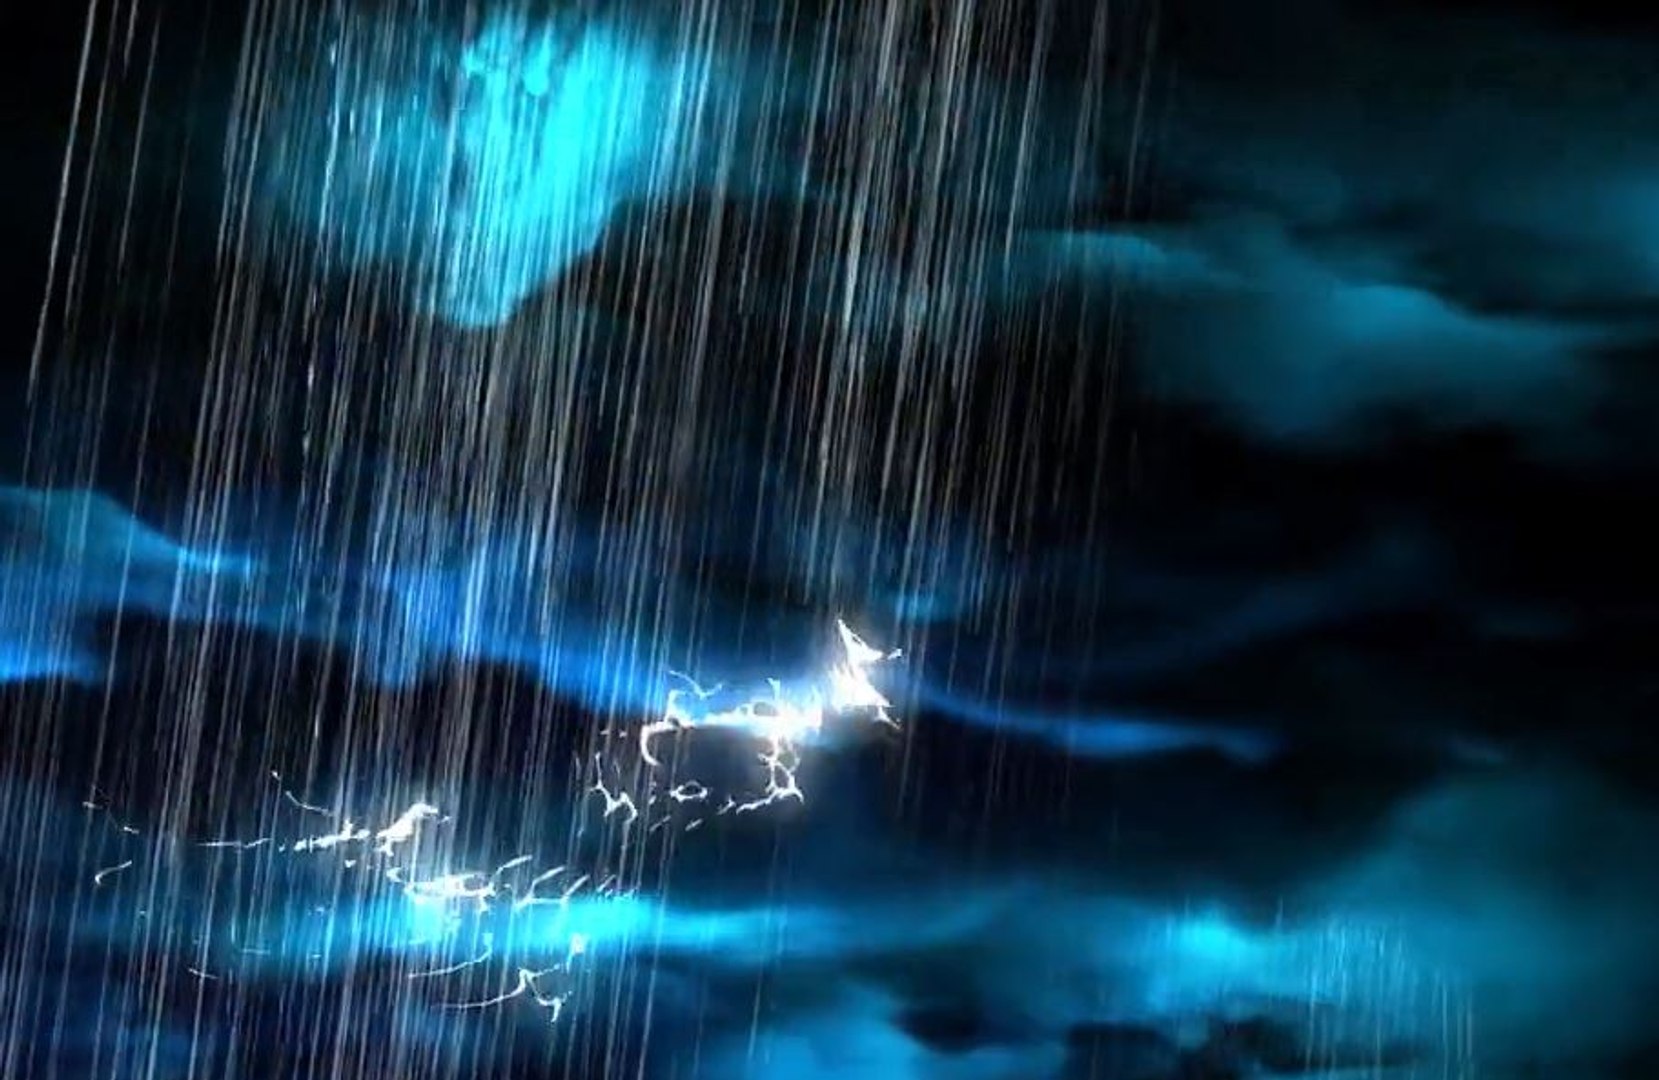 Le stress réduit le bruit des précipitations - Son de pluie reposant ft.  pluie sonore relaxante/Le son de la pluie MP3 Download & Lyrics